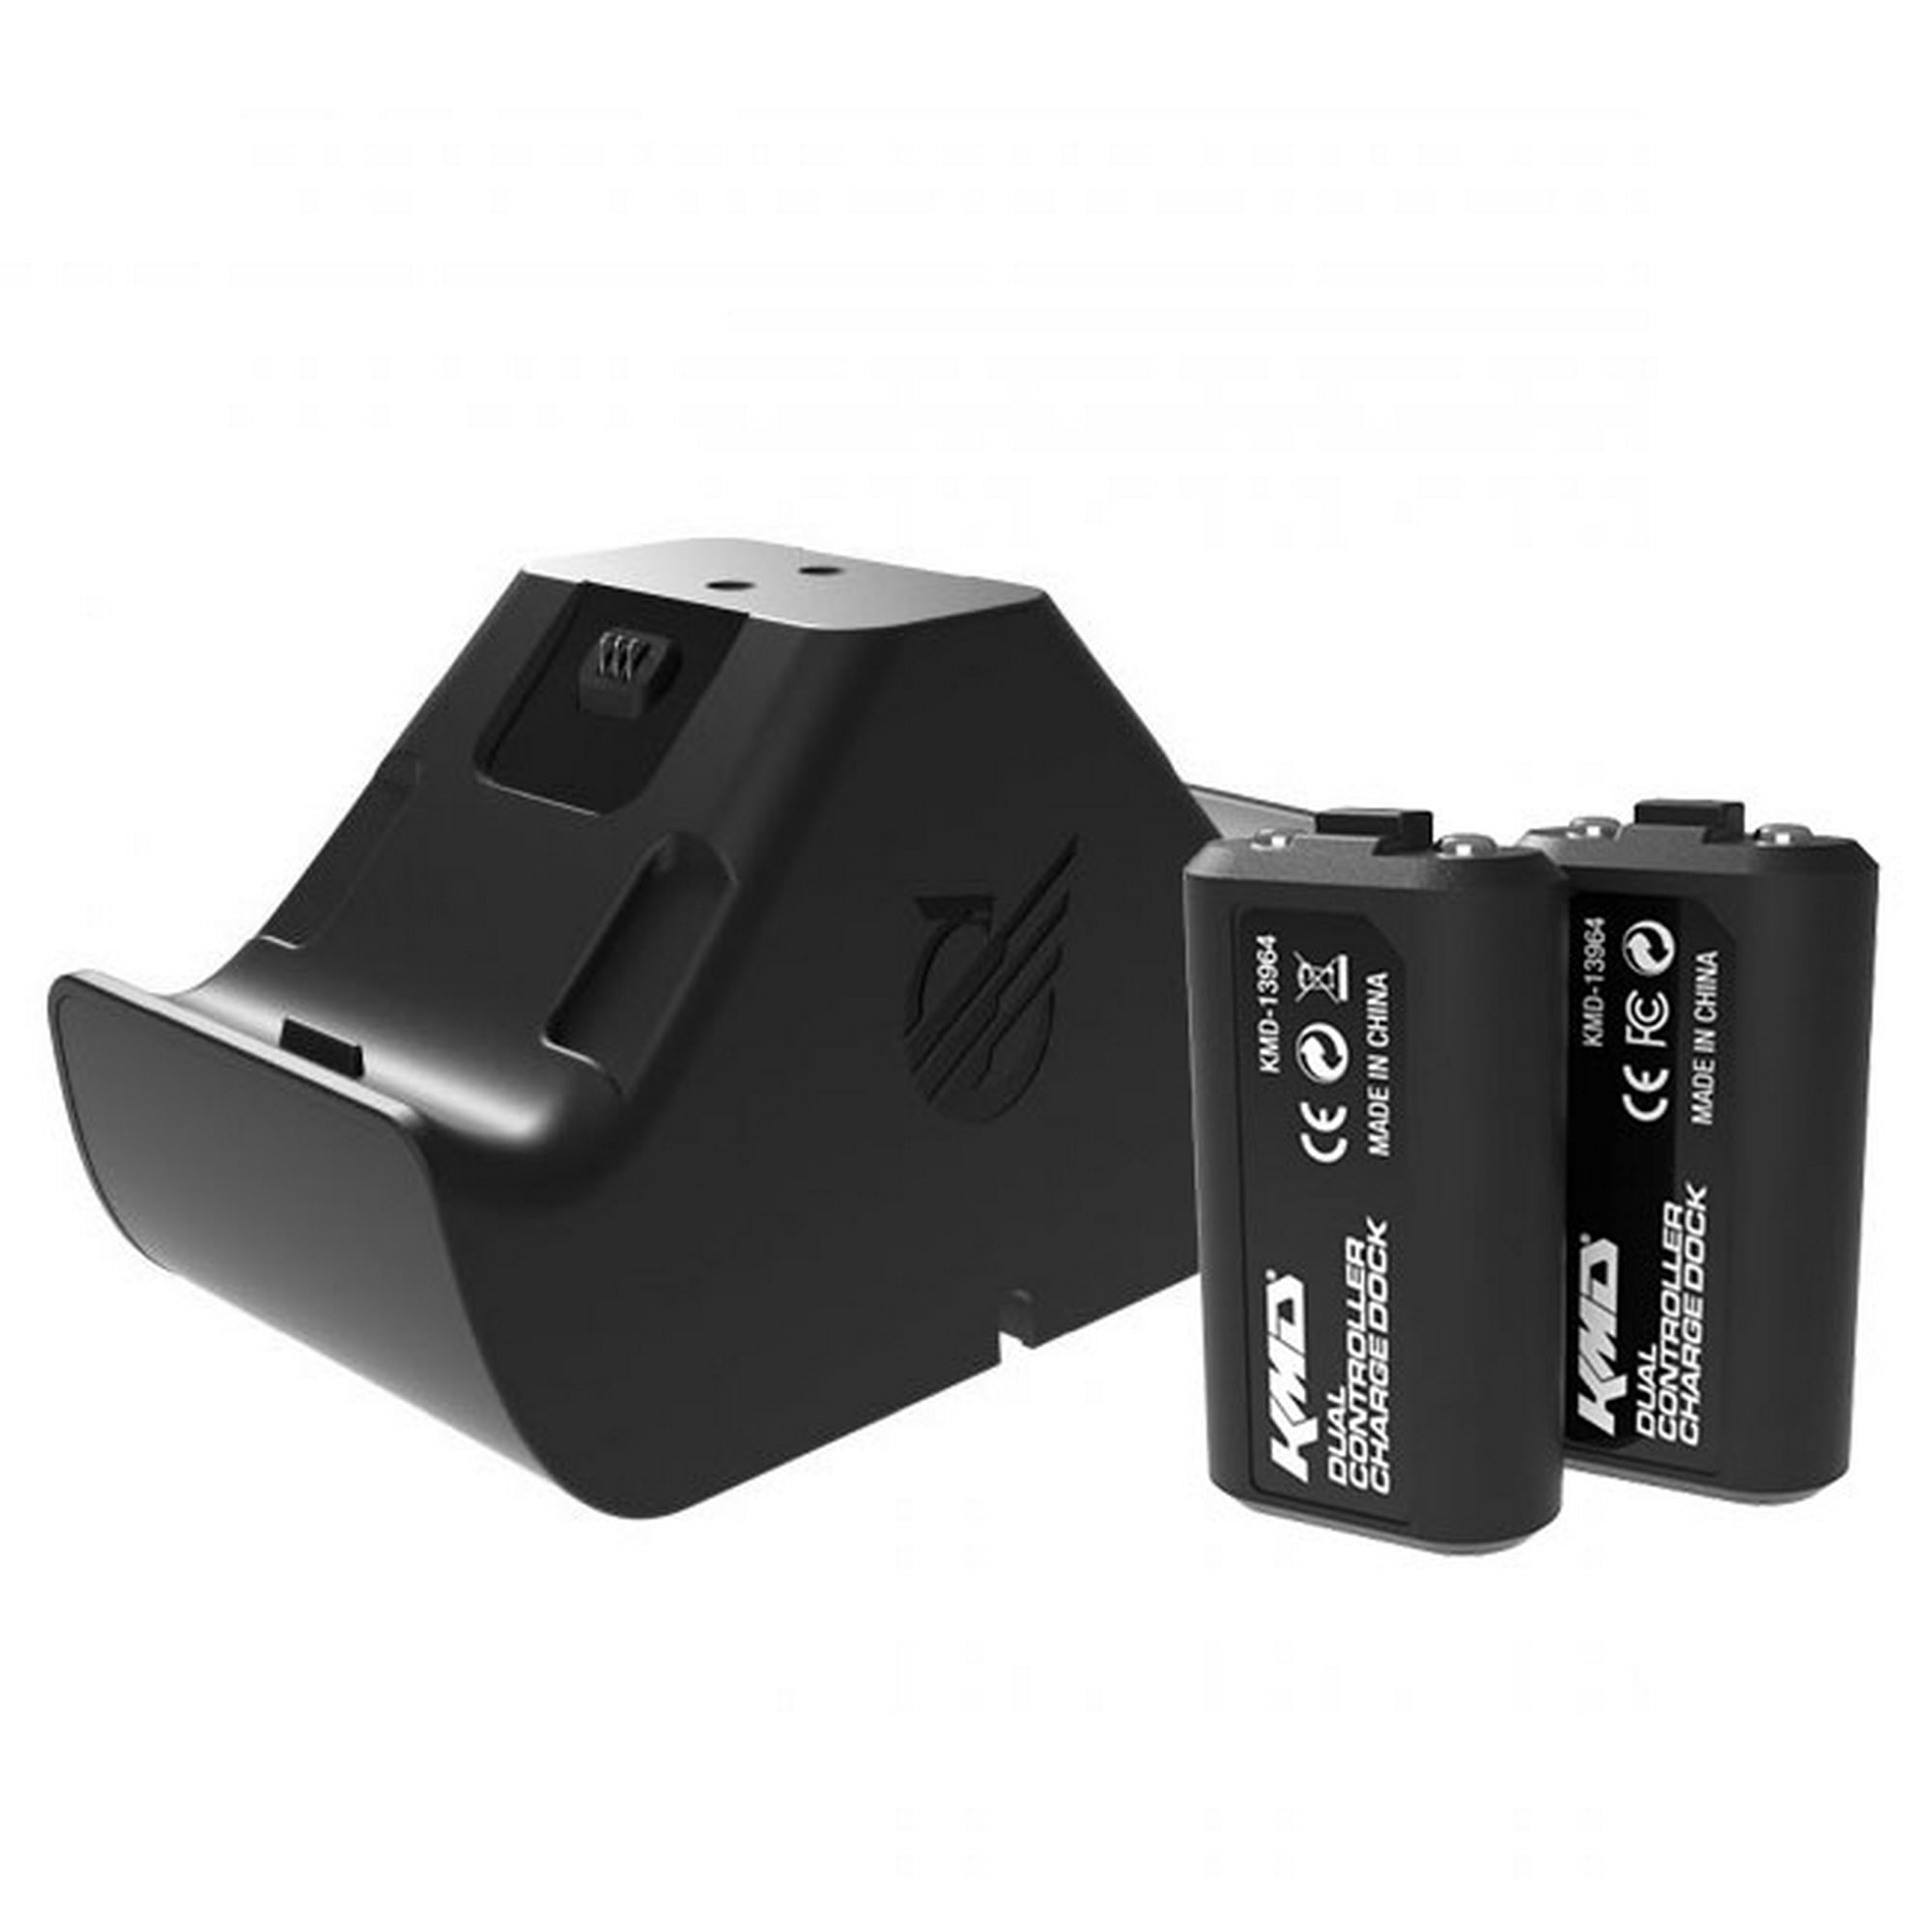 Batería recargable para Xbox 360, paquete de 2 baterías con estación de  carga dual base de cargador para mando inalámbrico Xbox 360, color negro